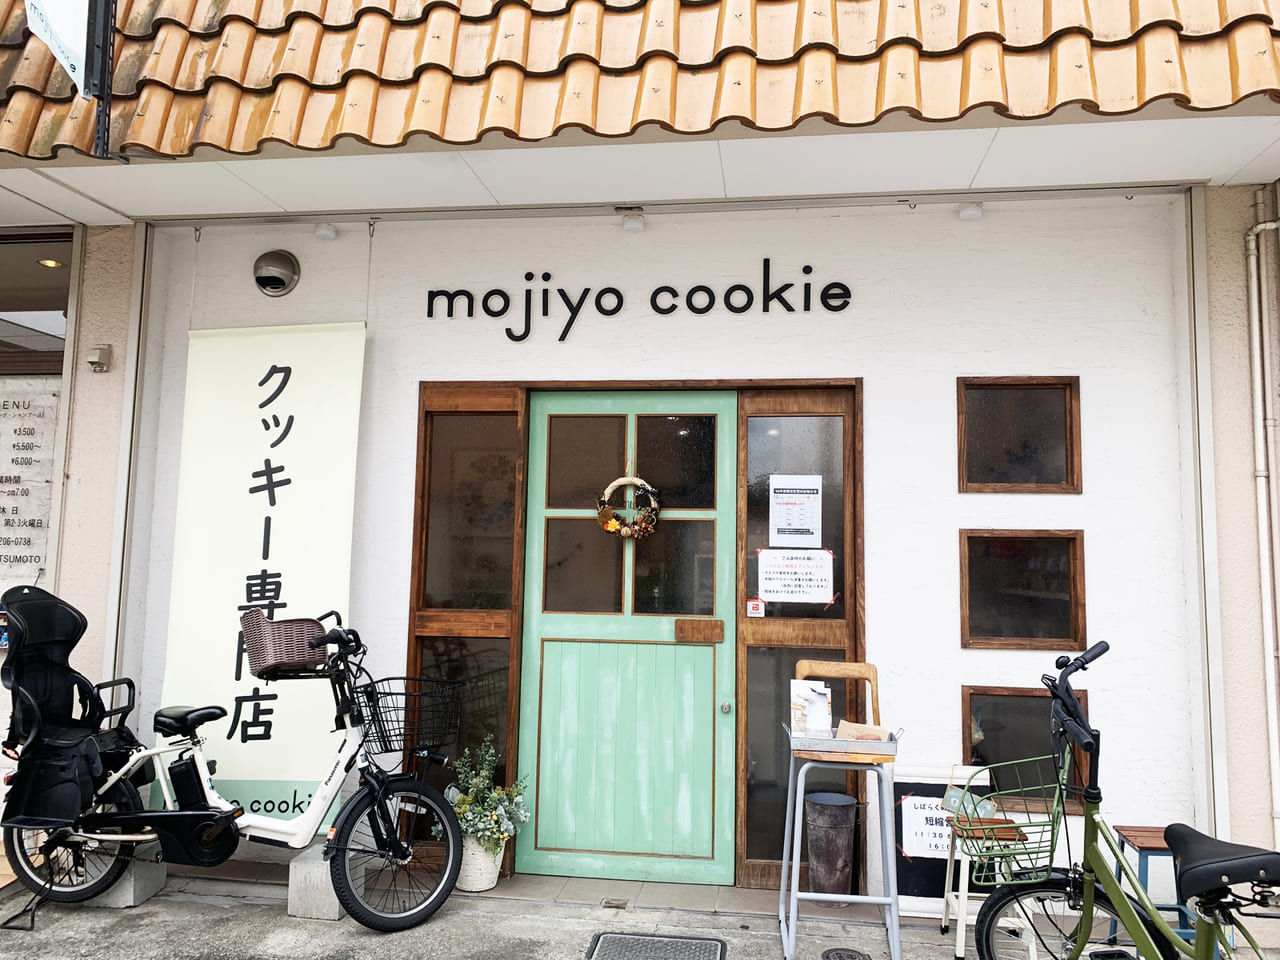  mojiyo cookie